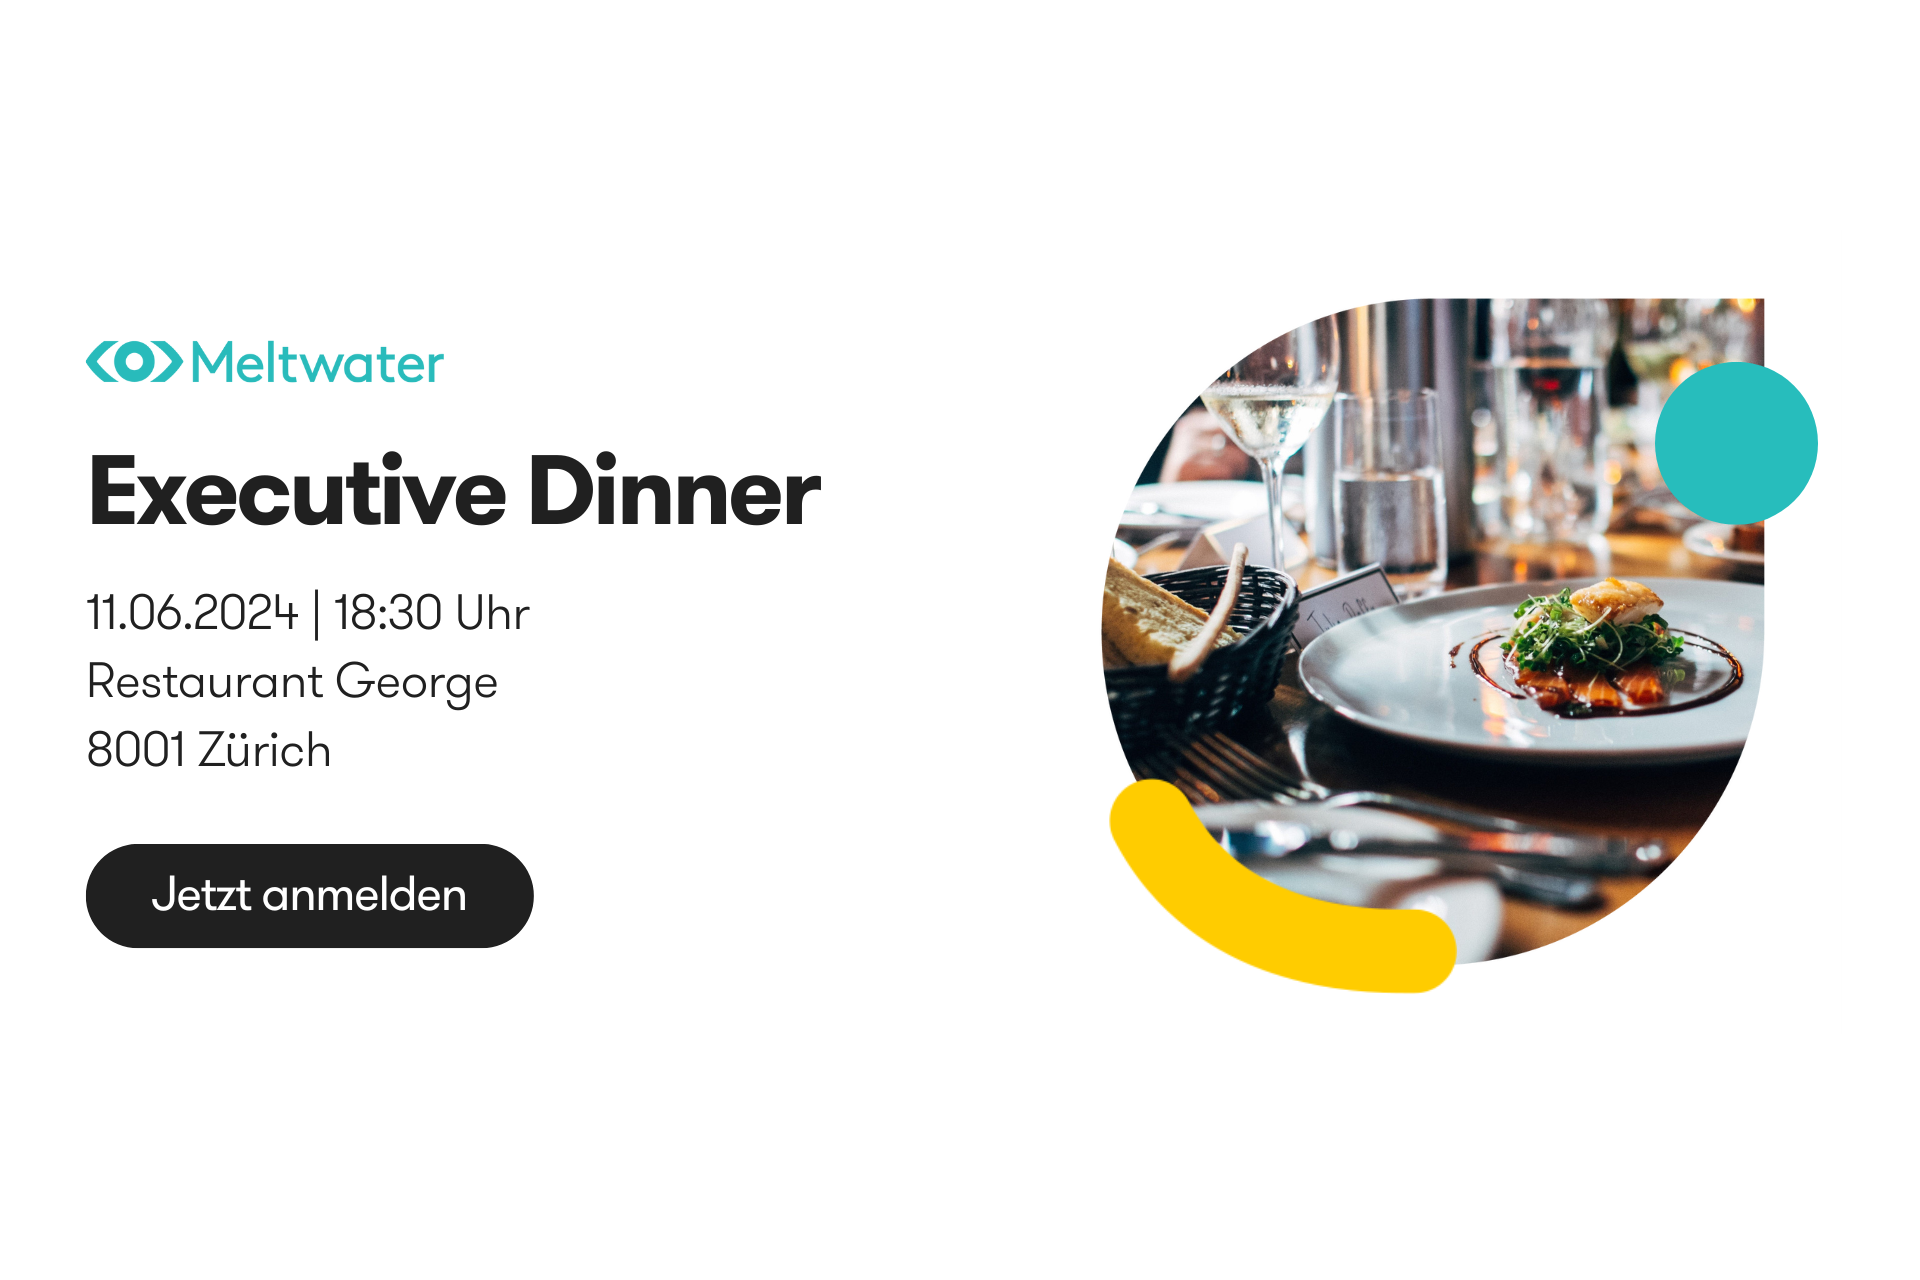 Executive Dinner von Meltwater in Zürich am 11.06.